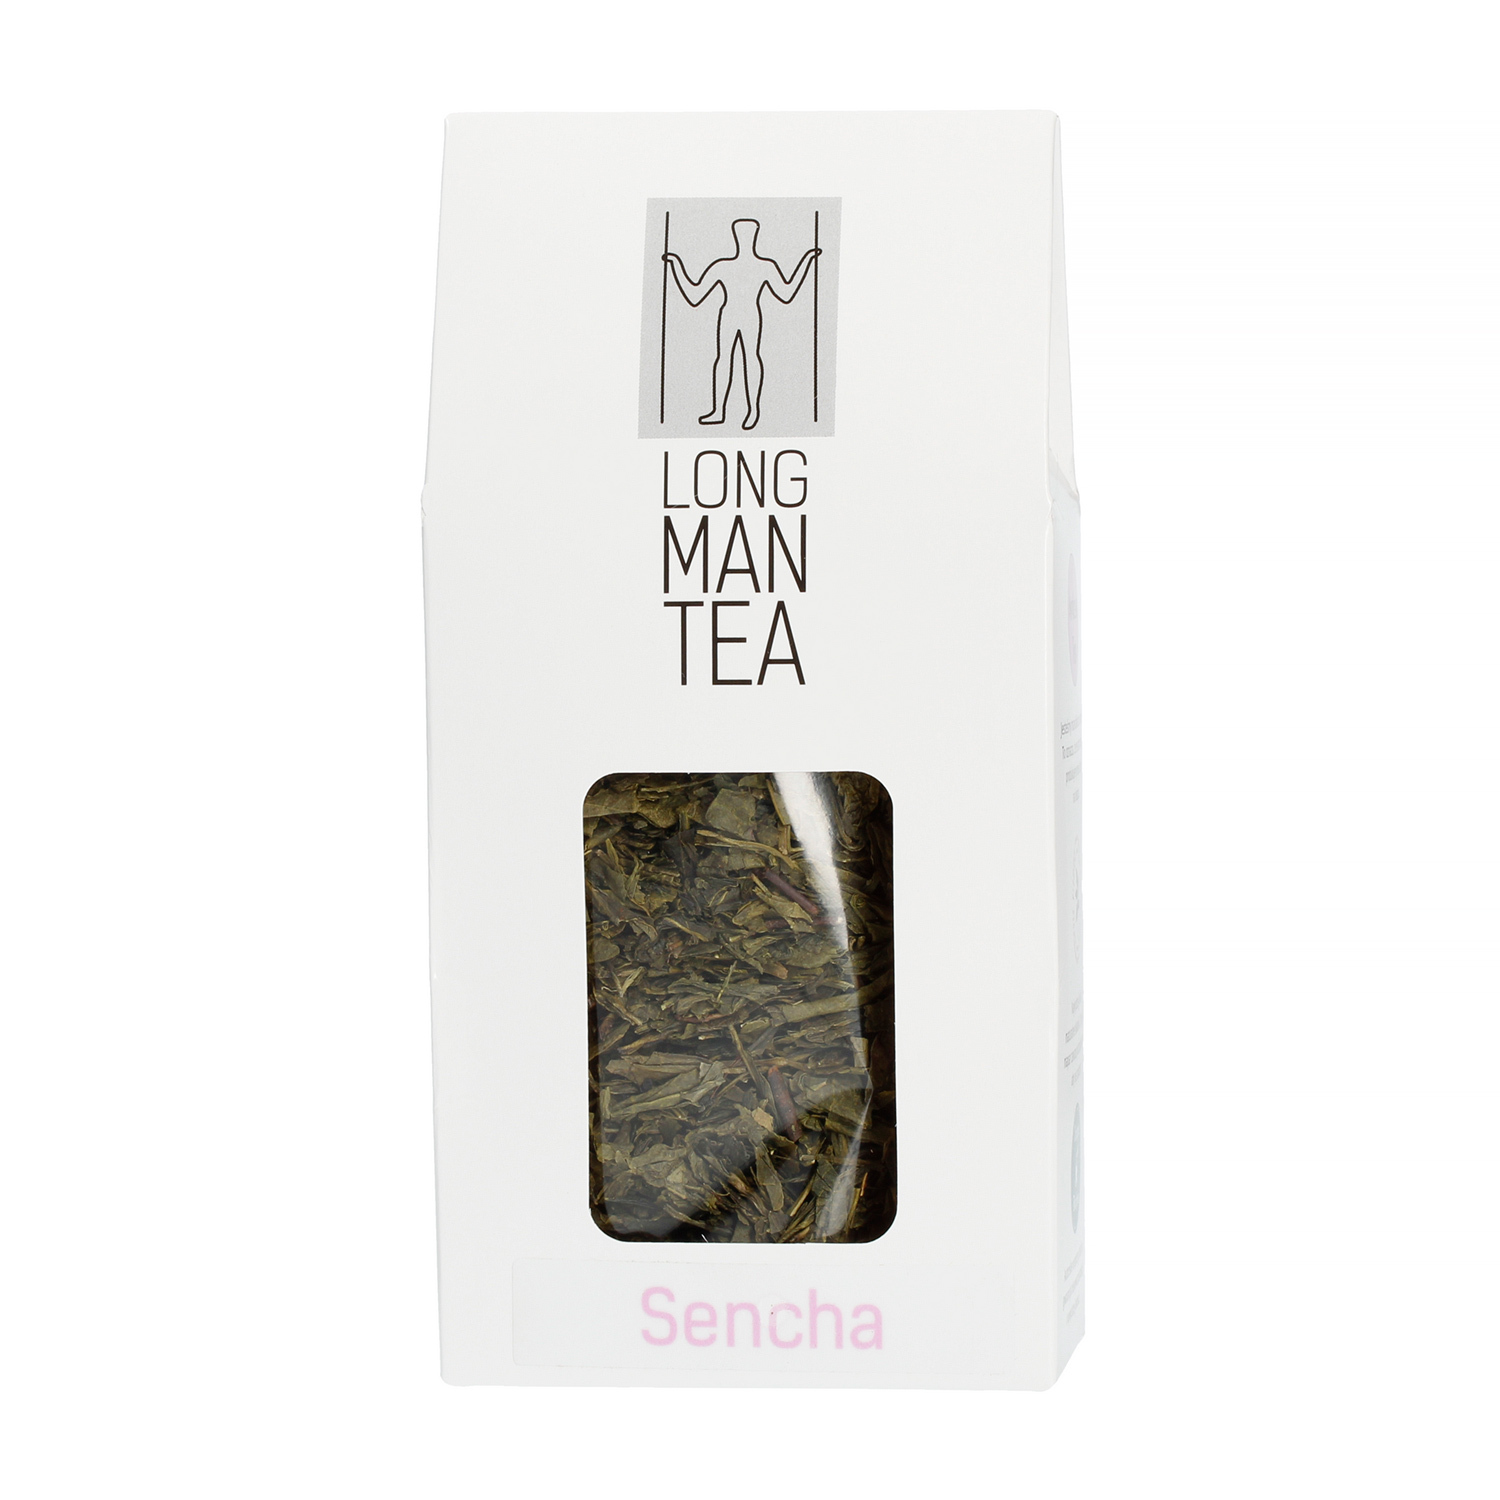 Long Man Tea - Sencha - Loose tea - 80g